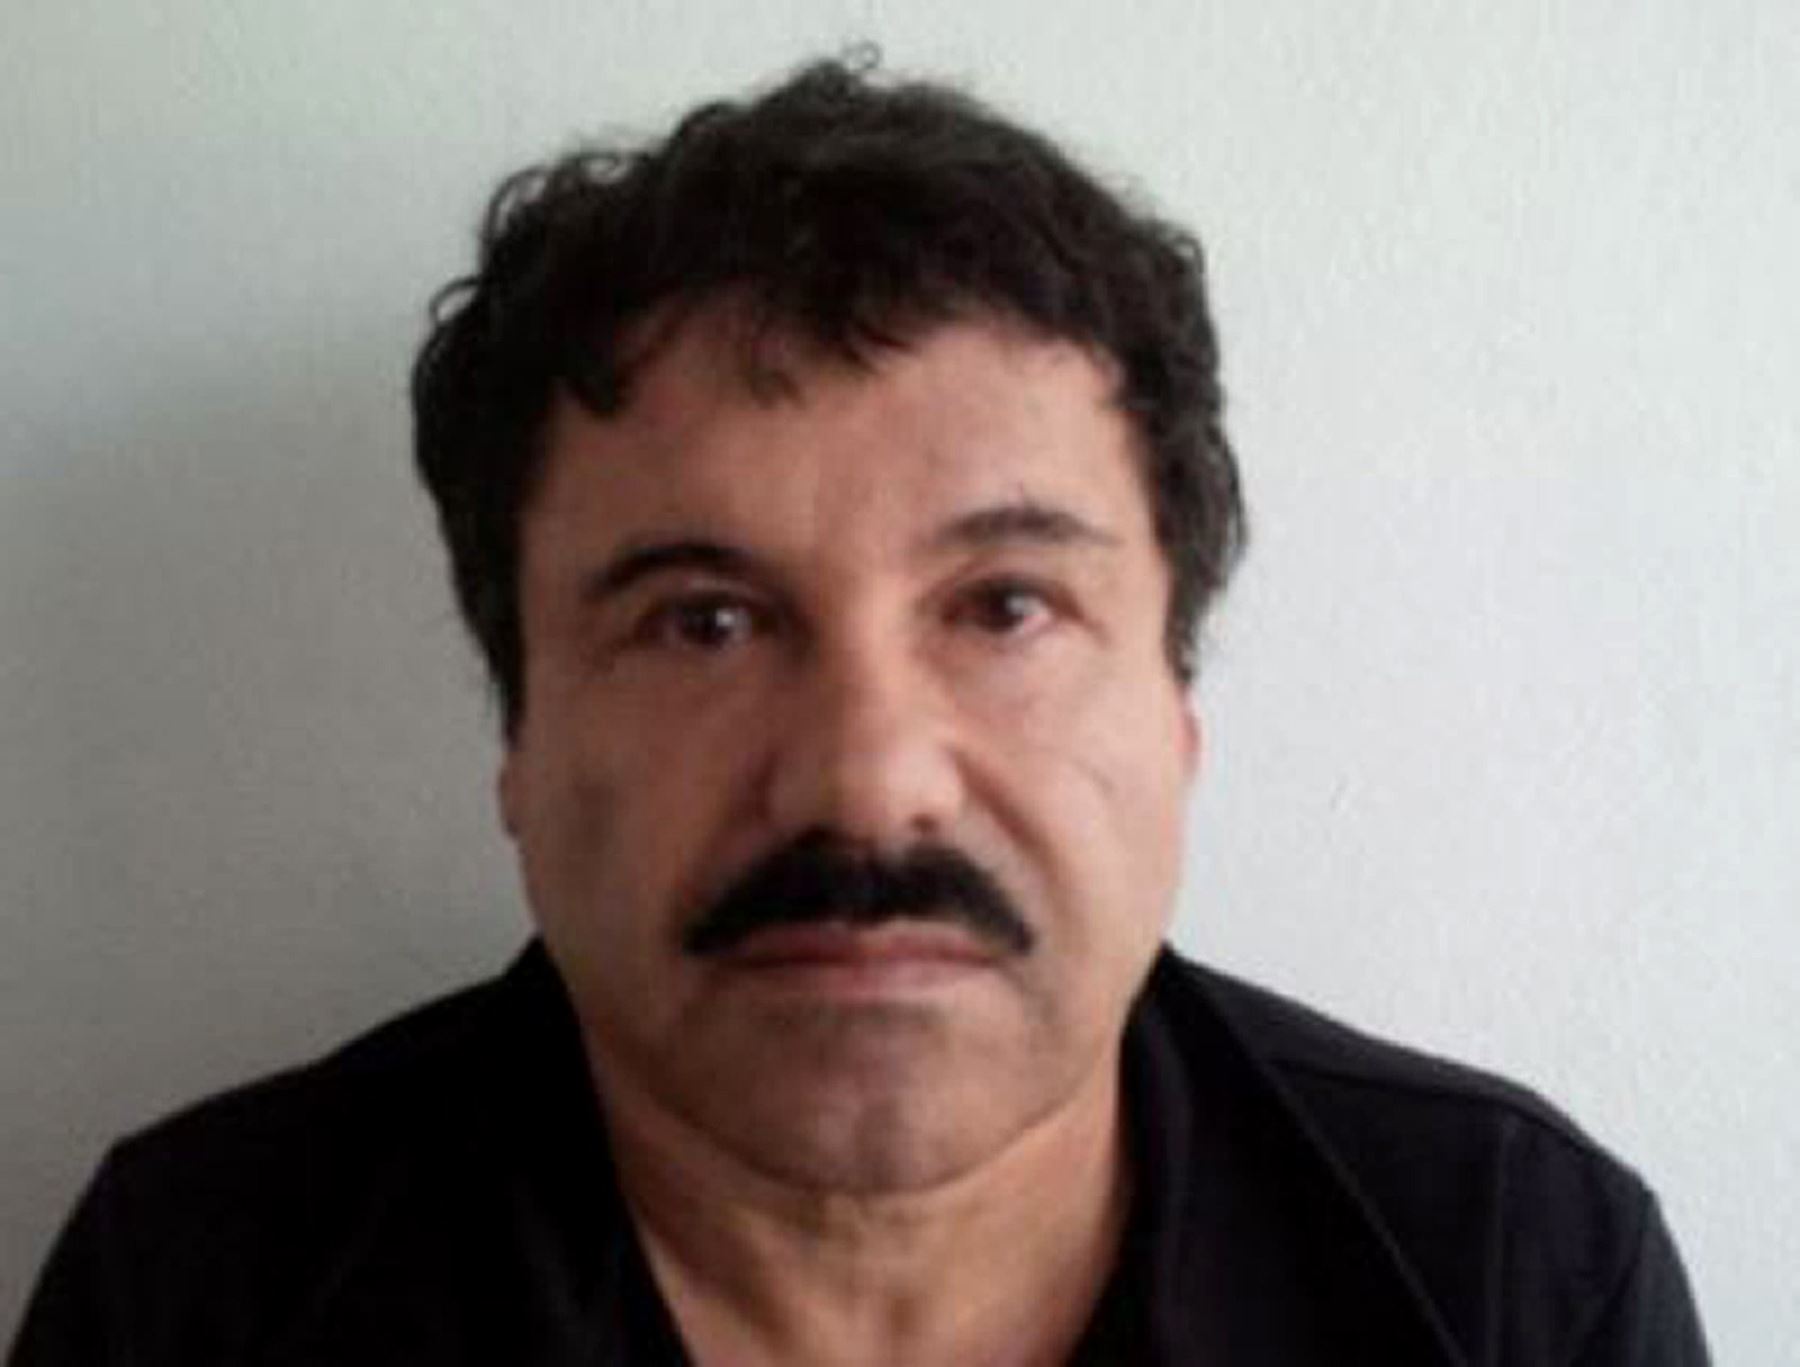 El capo del narcotráfico Joaquín “El Chapo” Guzmán escapa otra vez de